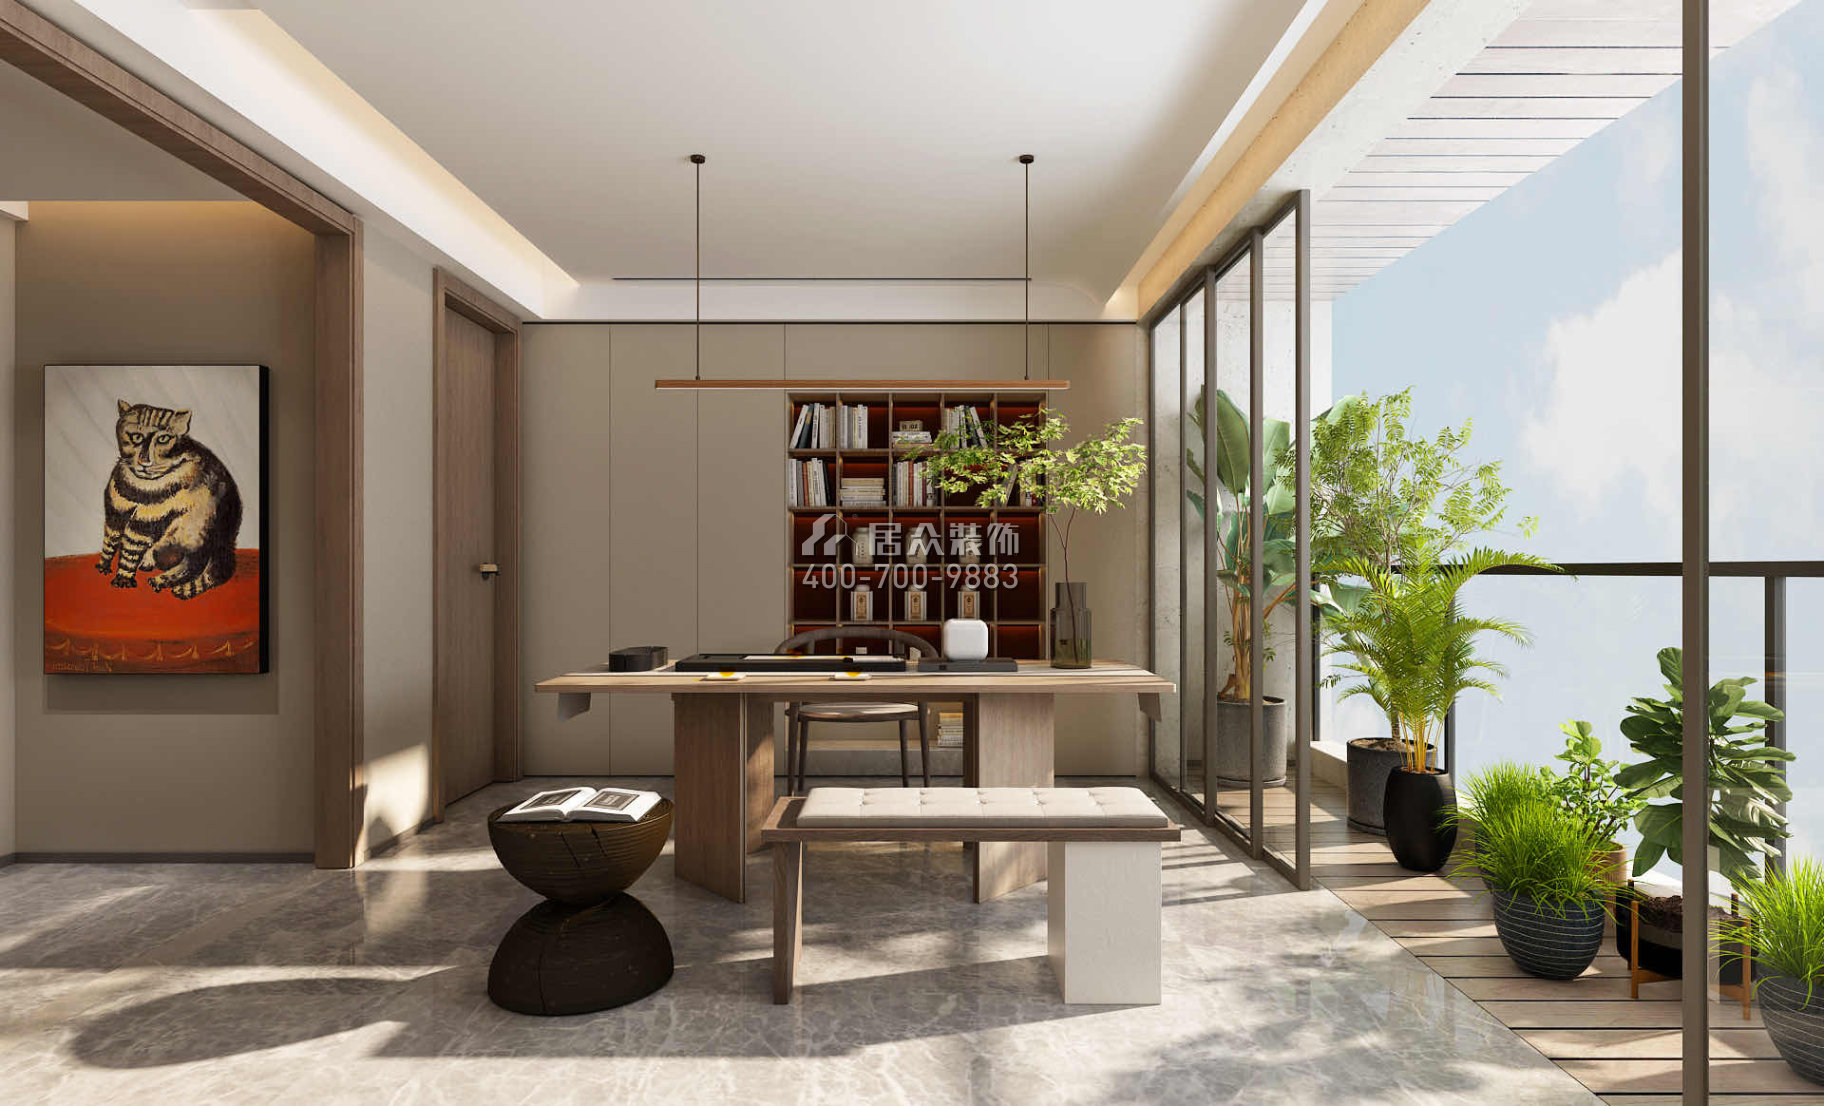 明珠国际300平方米现代简约风格平层户型茶室装修效果图